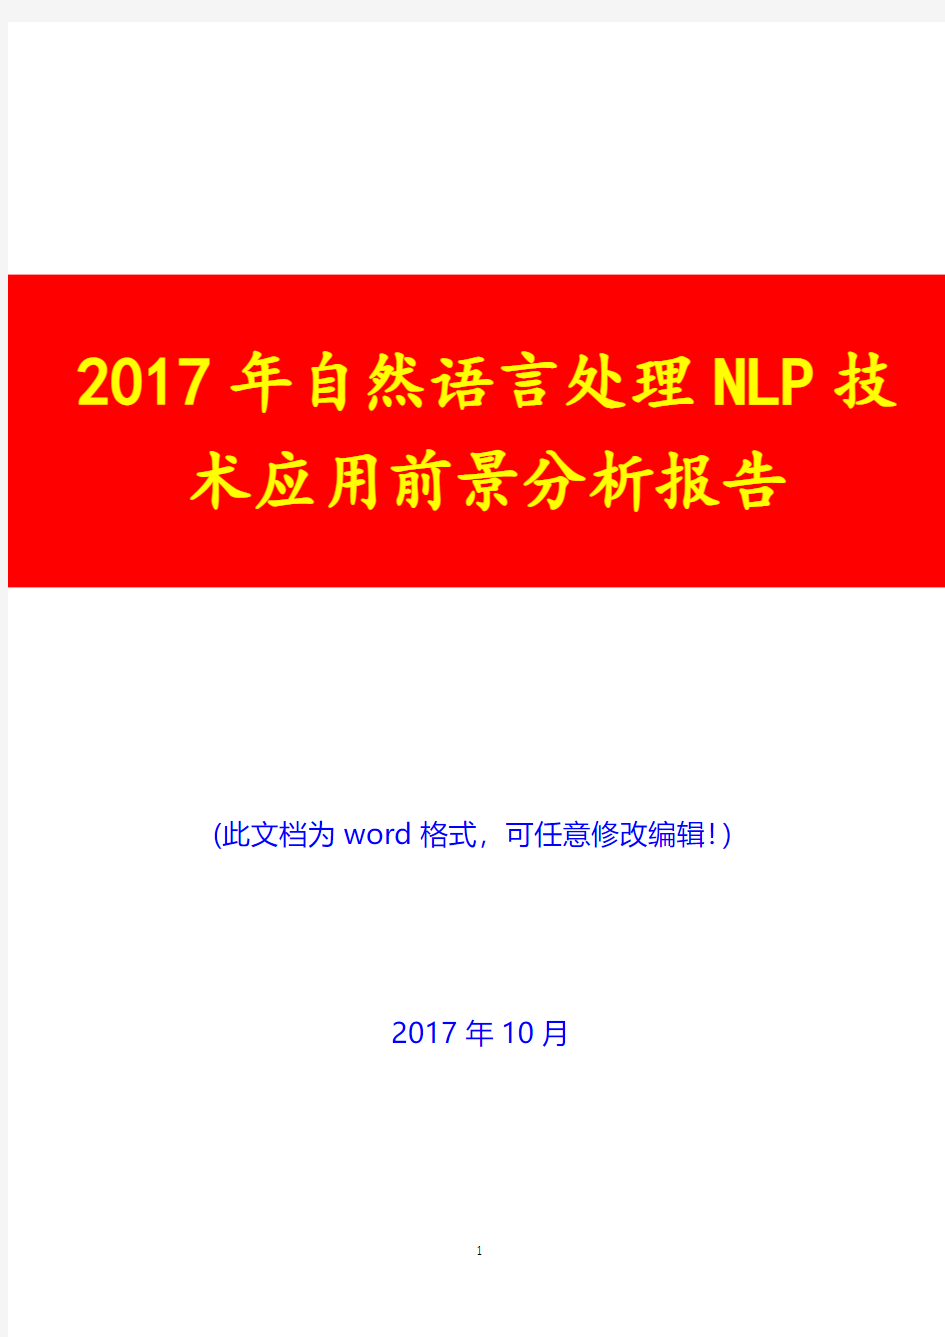 2017年自然语言处理NLP技术应用前景分析报告